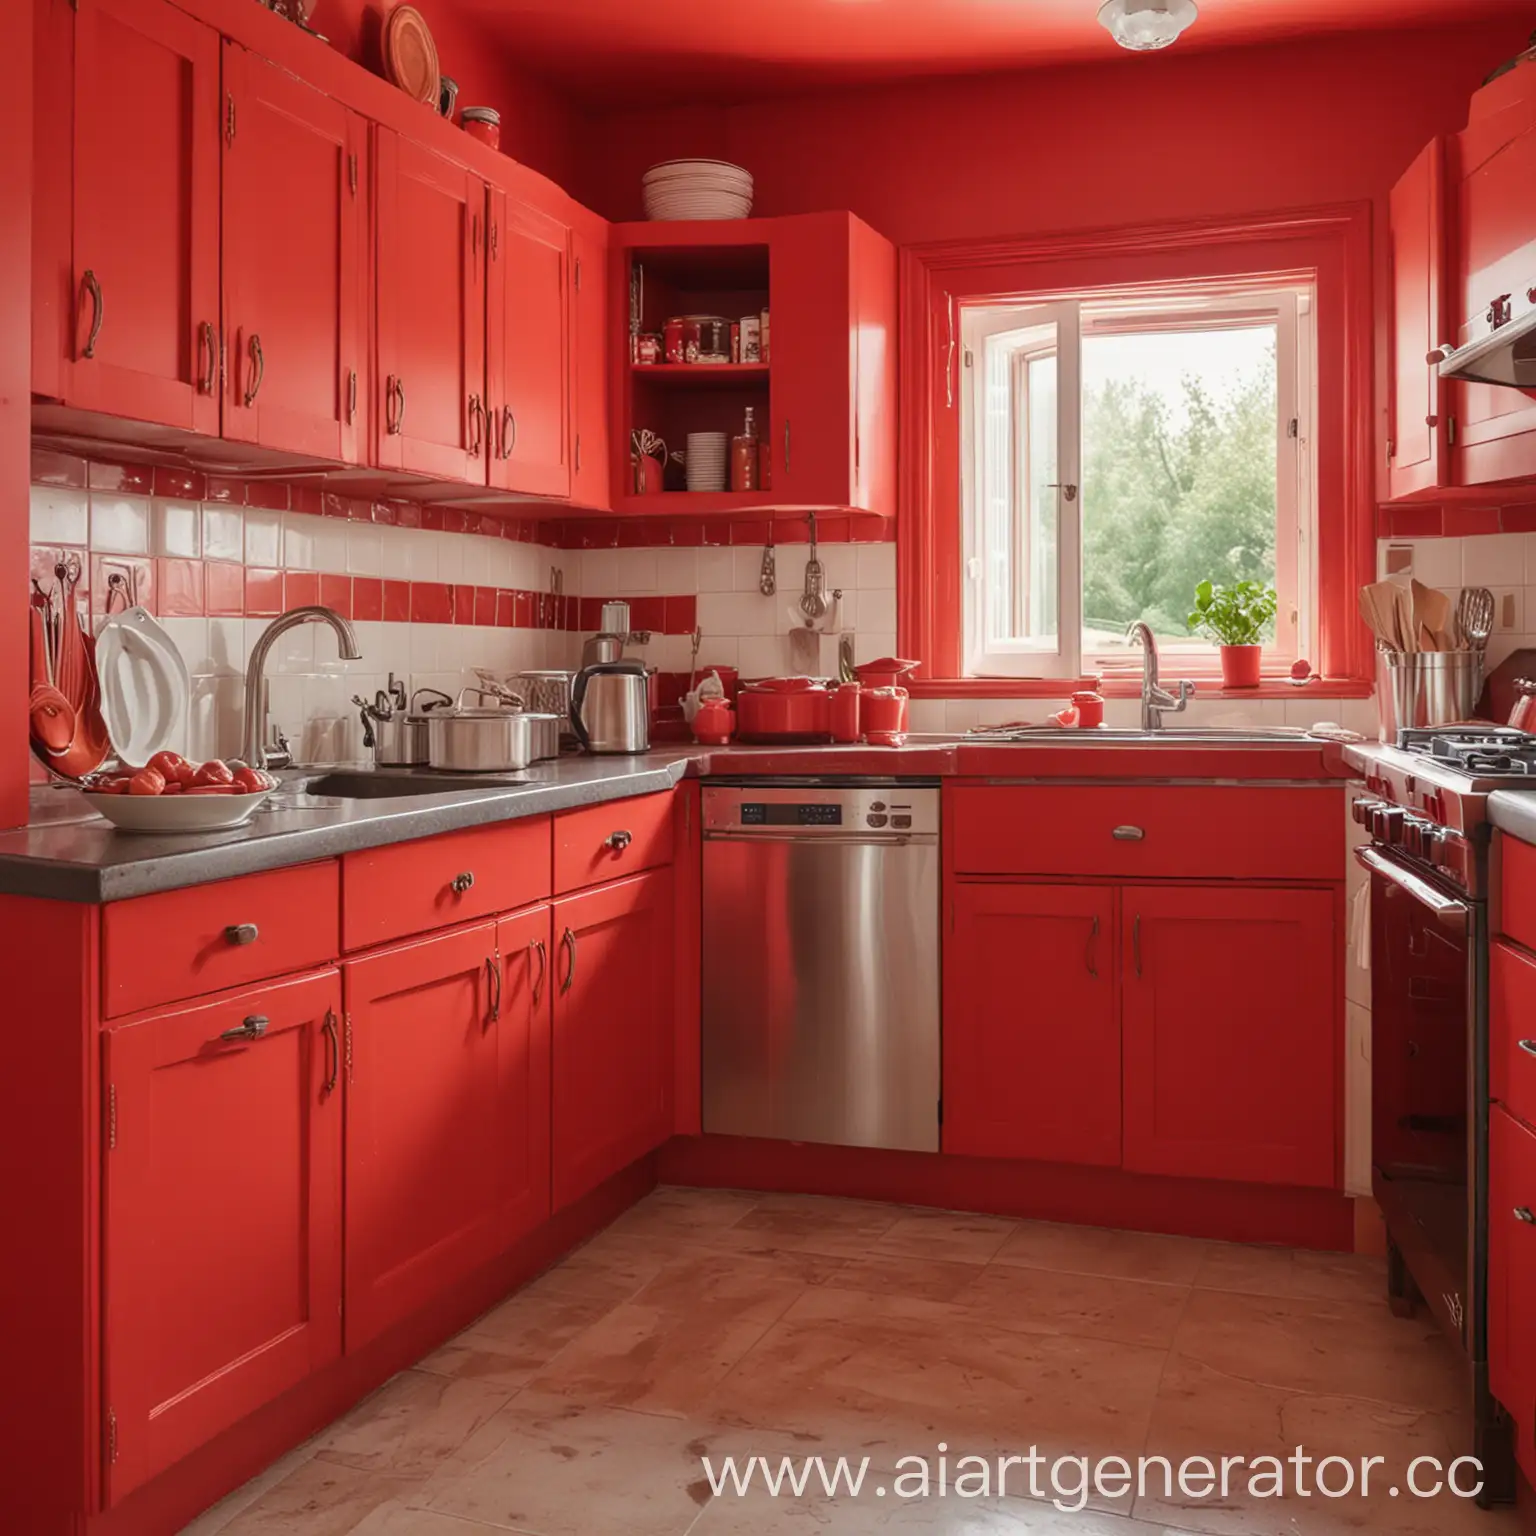 Изображение угловой кухни в ярких красных цветах, занимающее центральное место.